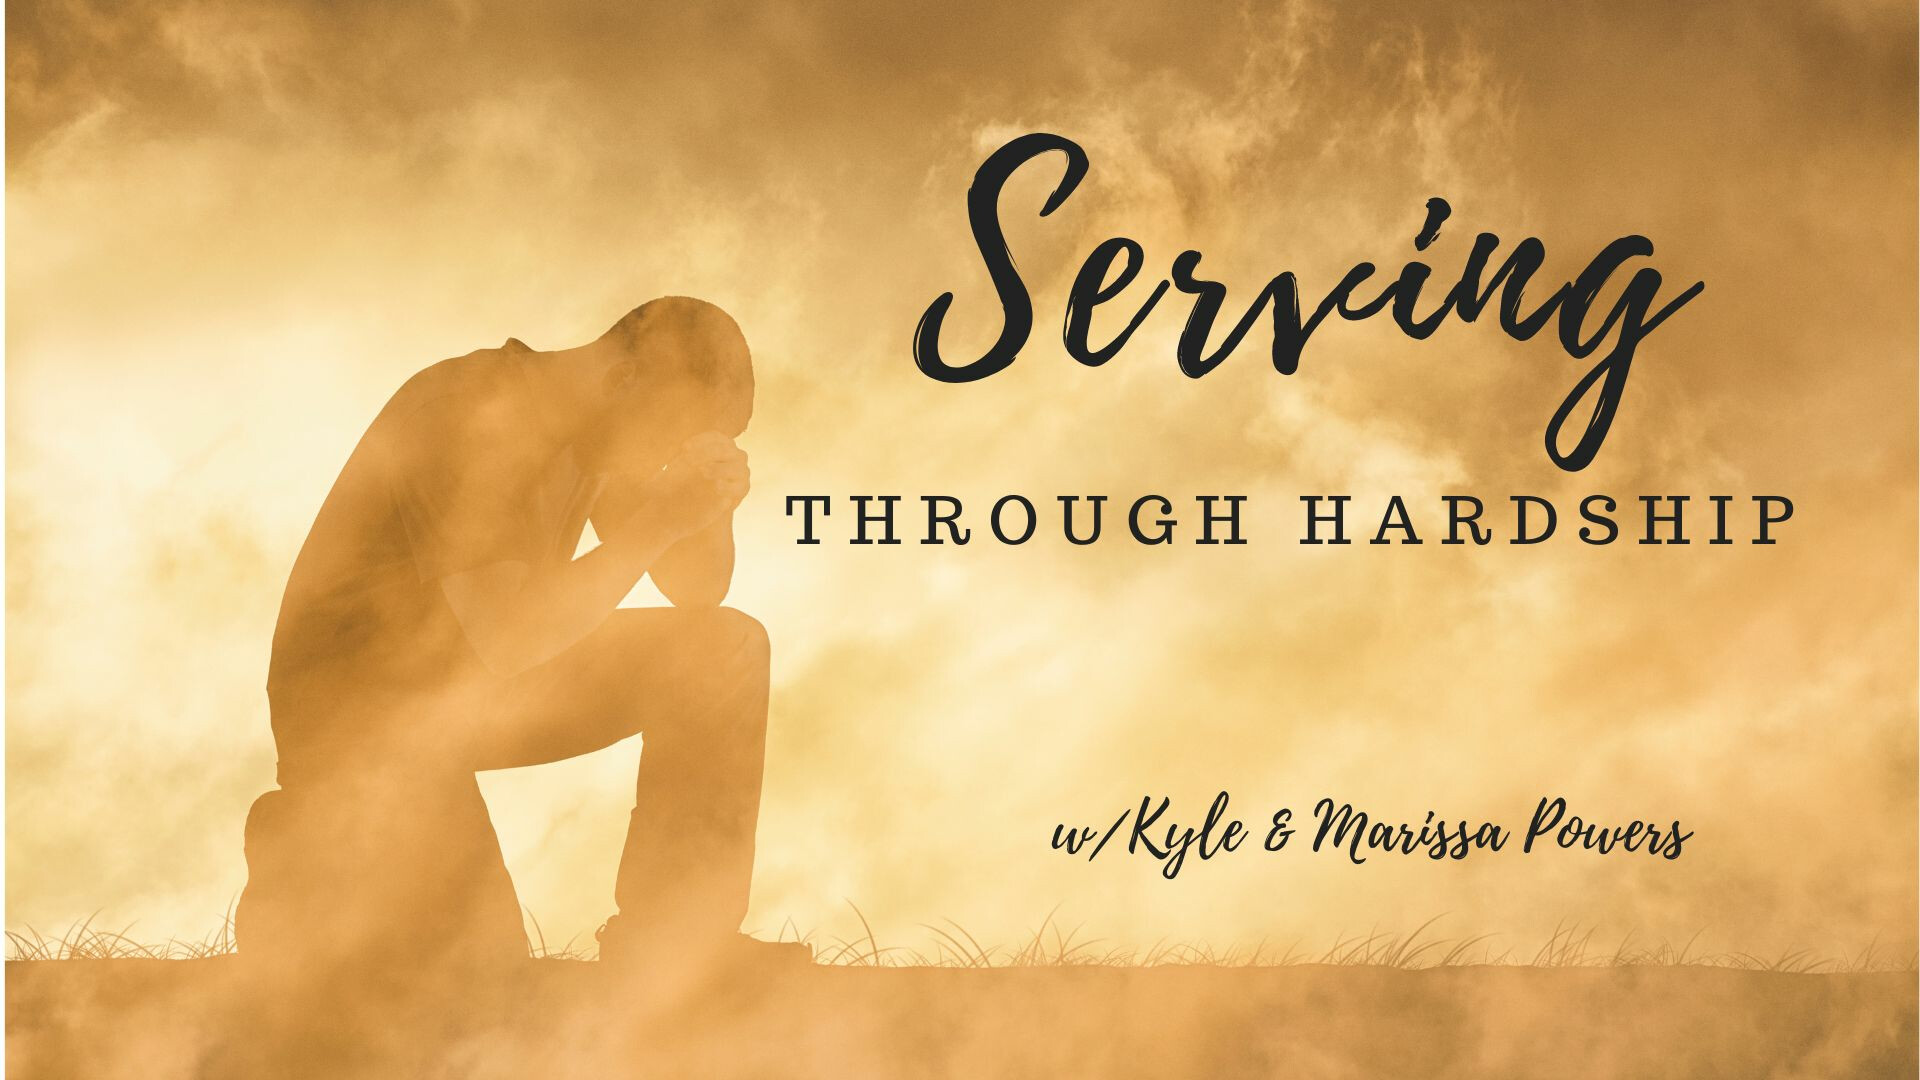 Serving Through Hardship